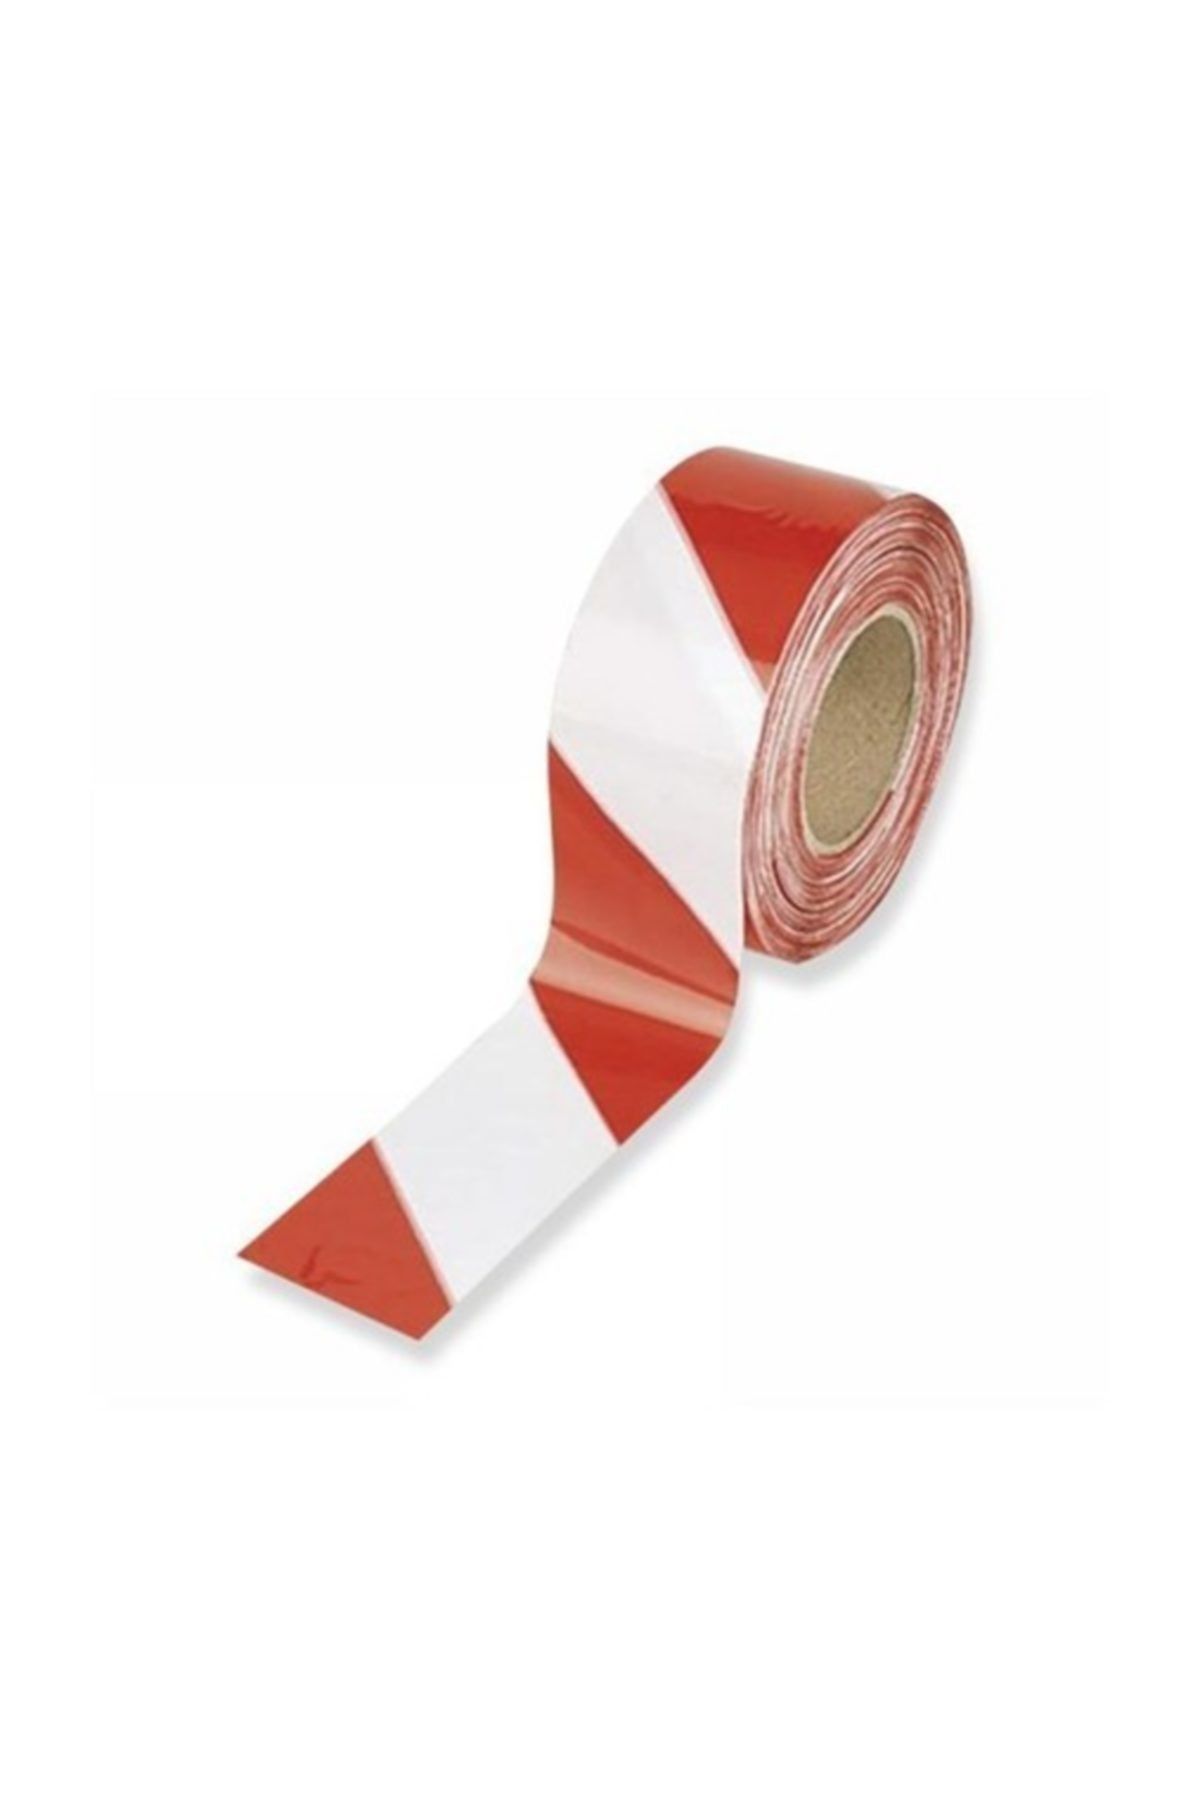 Gereksiz Şeyler Kırmızı Beyaz Ikaz Bandı - Emniyet Şeridi - Iş Güvenliği Şeridi- 1 Adet 360 Metre